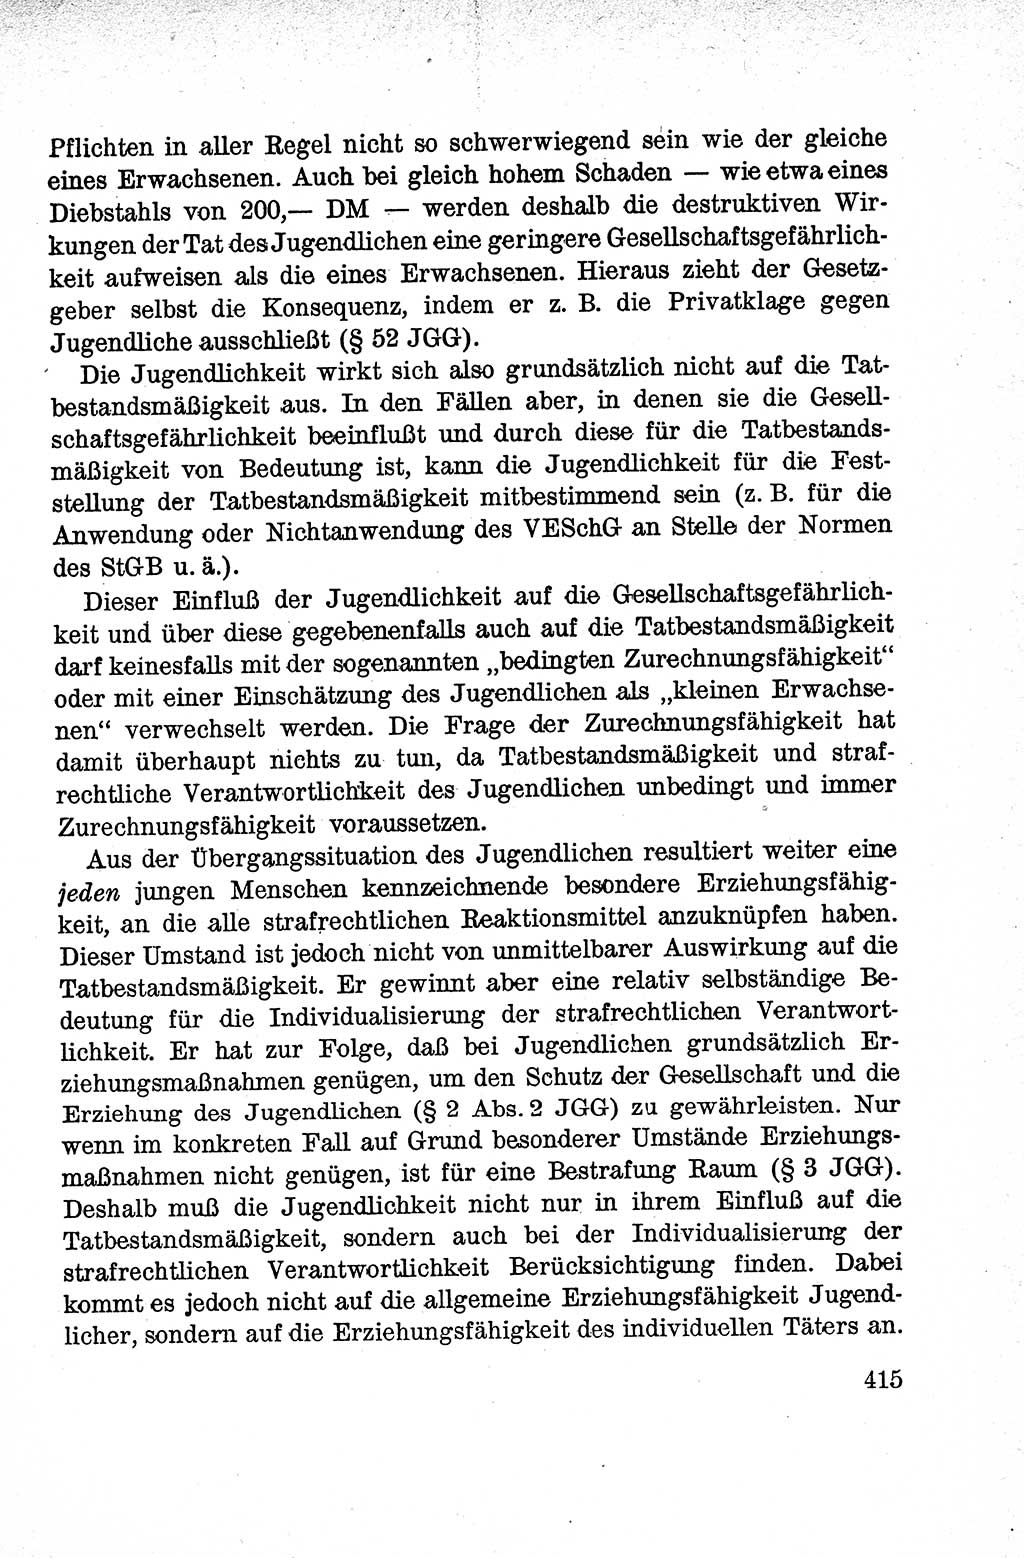 Lehrbuch des Strafrechts der Deutschen Demokratischen Republik (DDR), Allgemeiner Teil 1959, Seite 415 (Lb. Strafr. DDR AT 1959, S. 415)